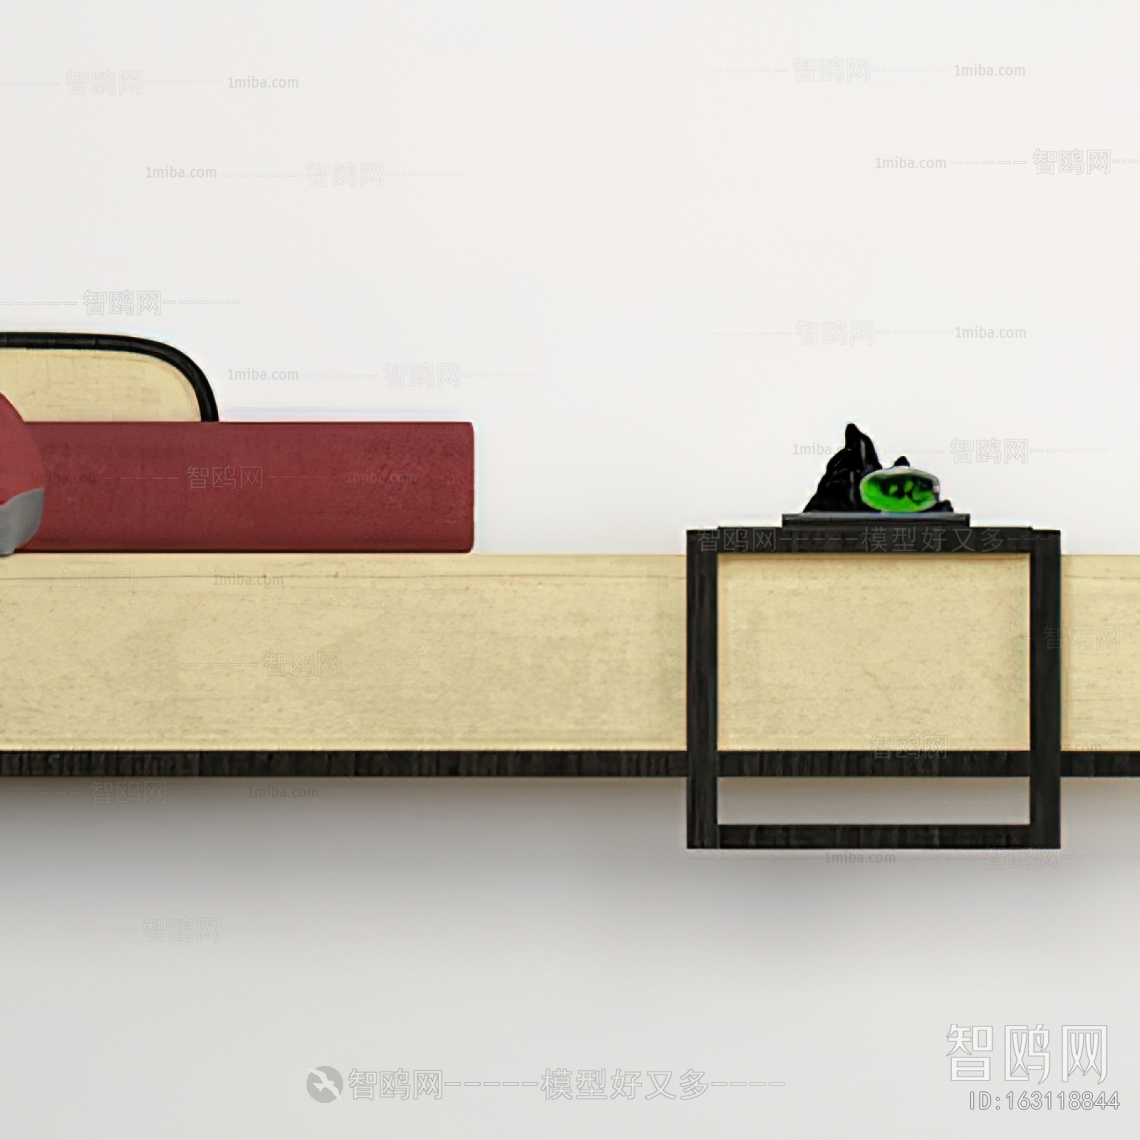 新中式布艺床尾凳